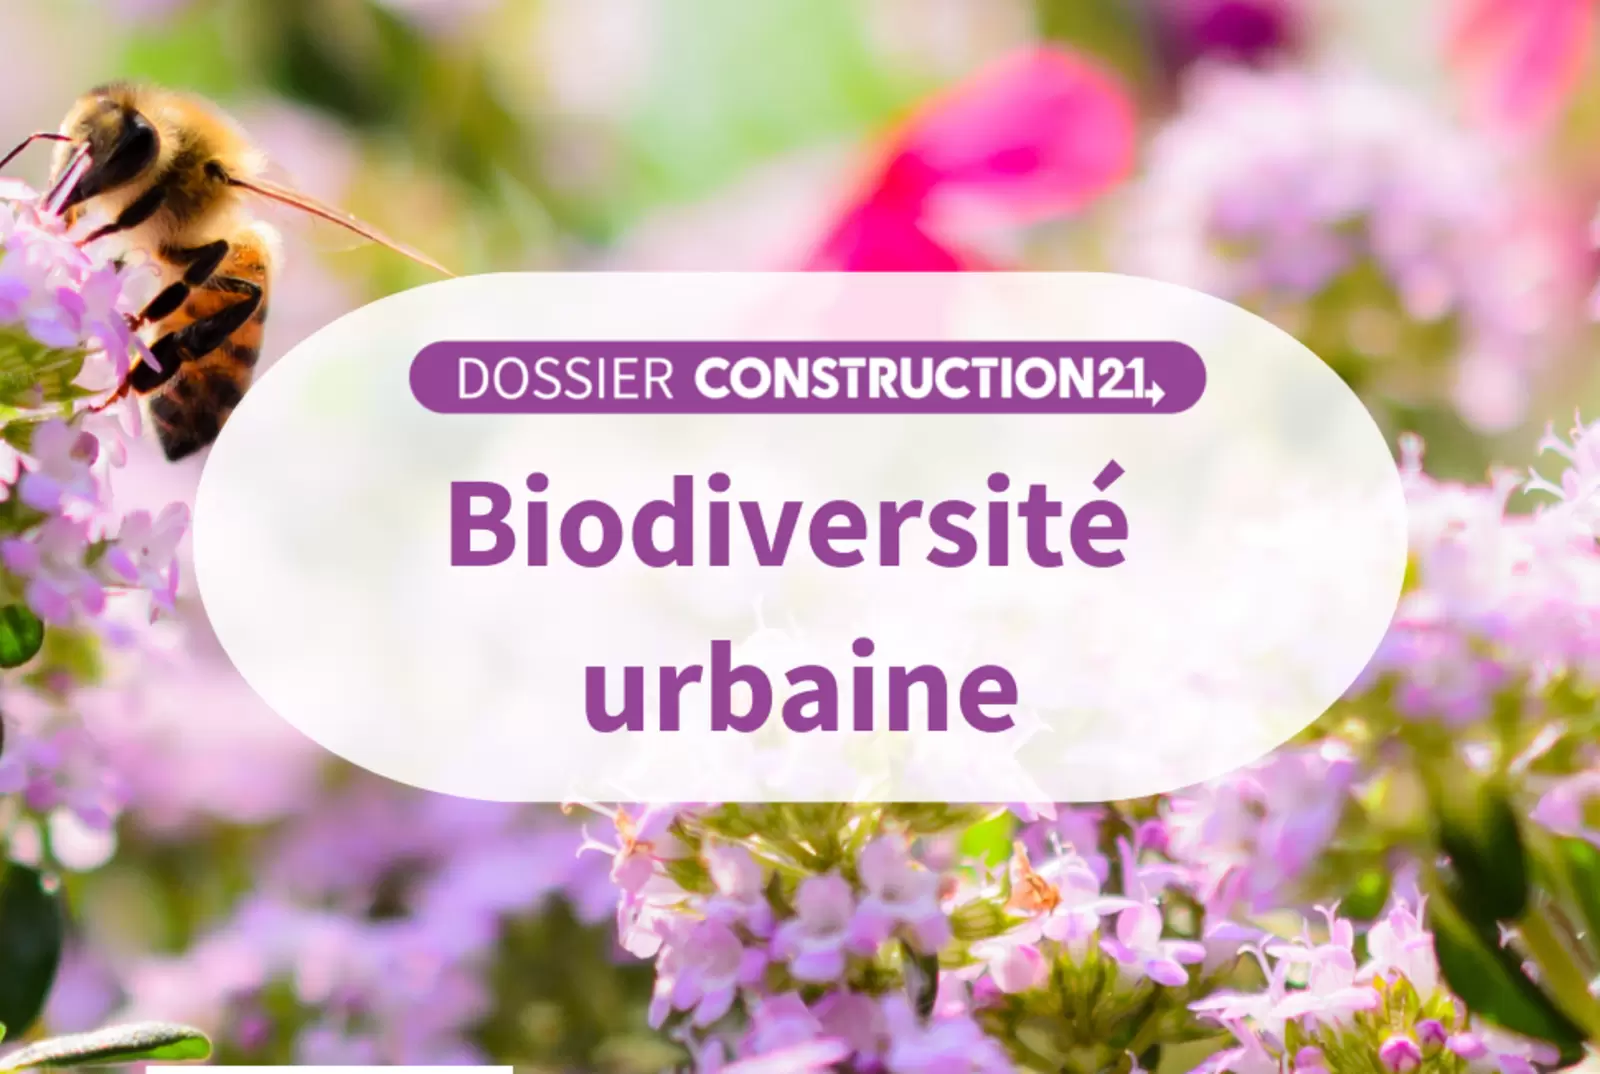 Biodiversité urbaine